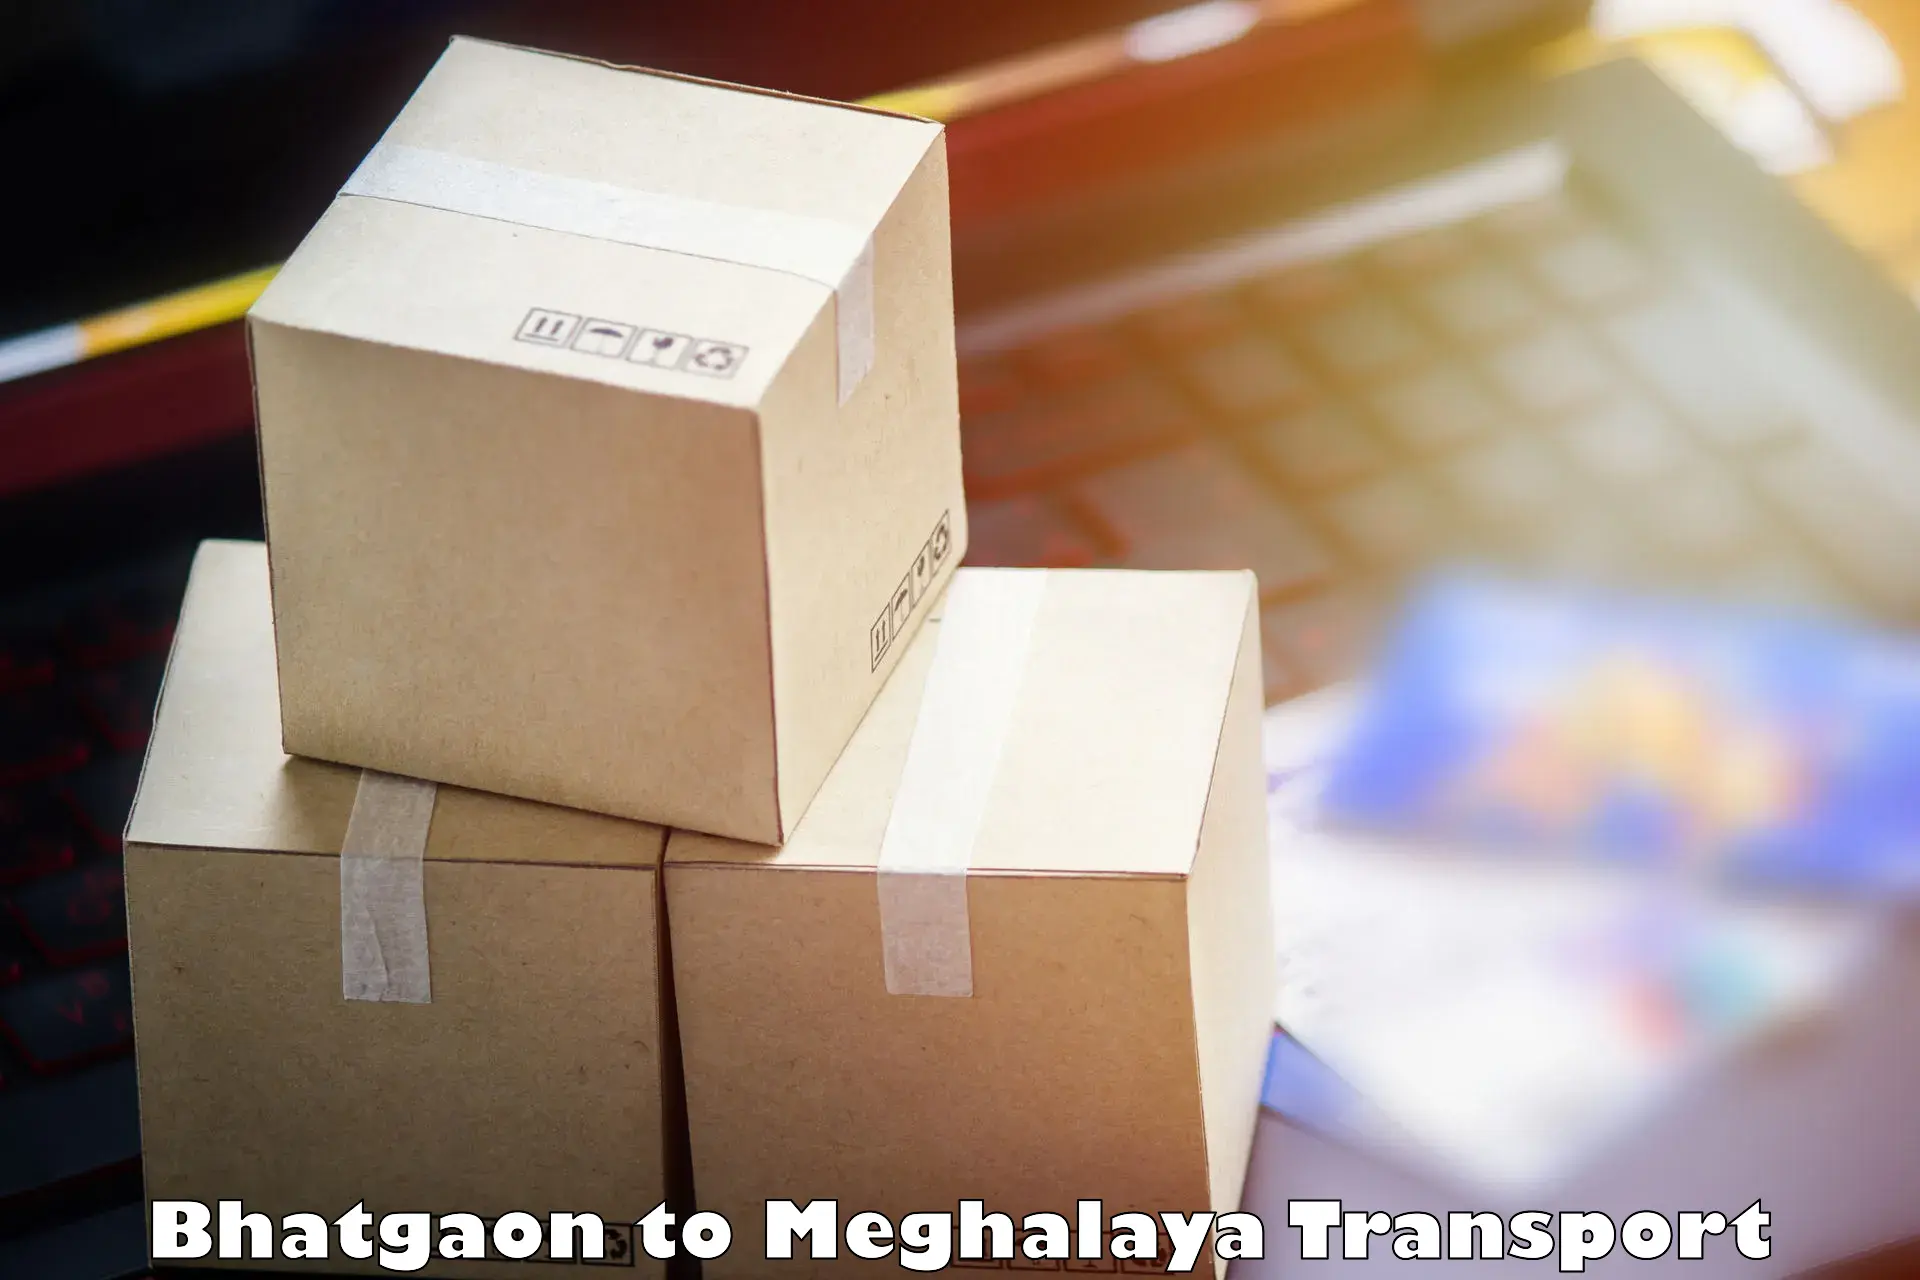 Express transport services Bhatgaon to NIT Meghalaya